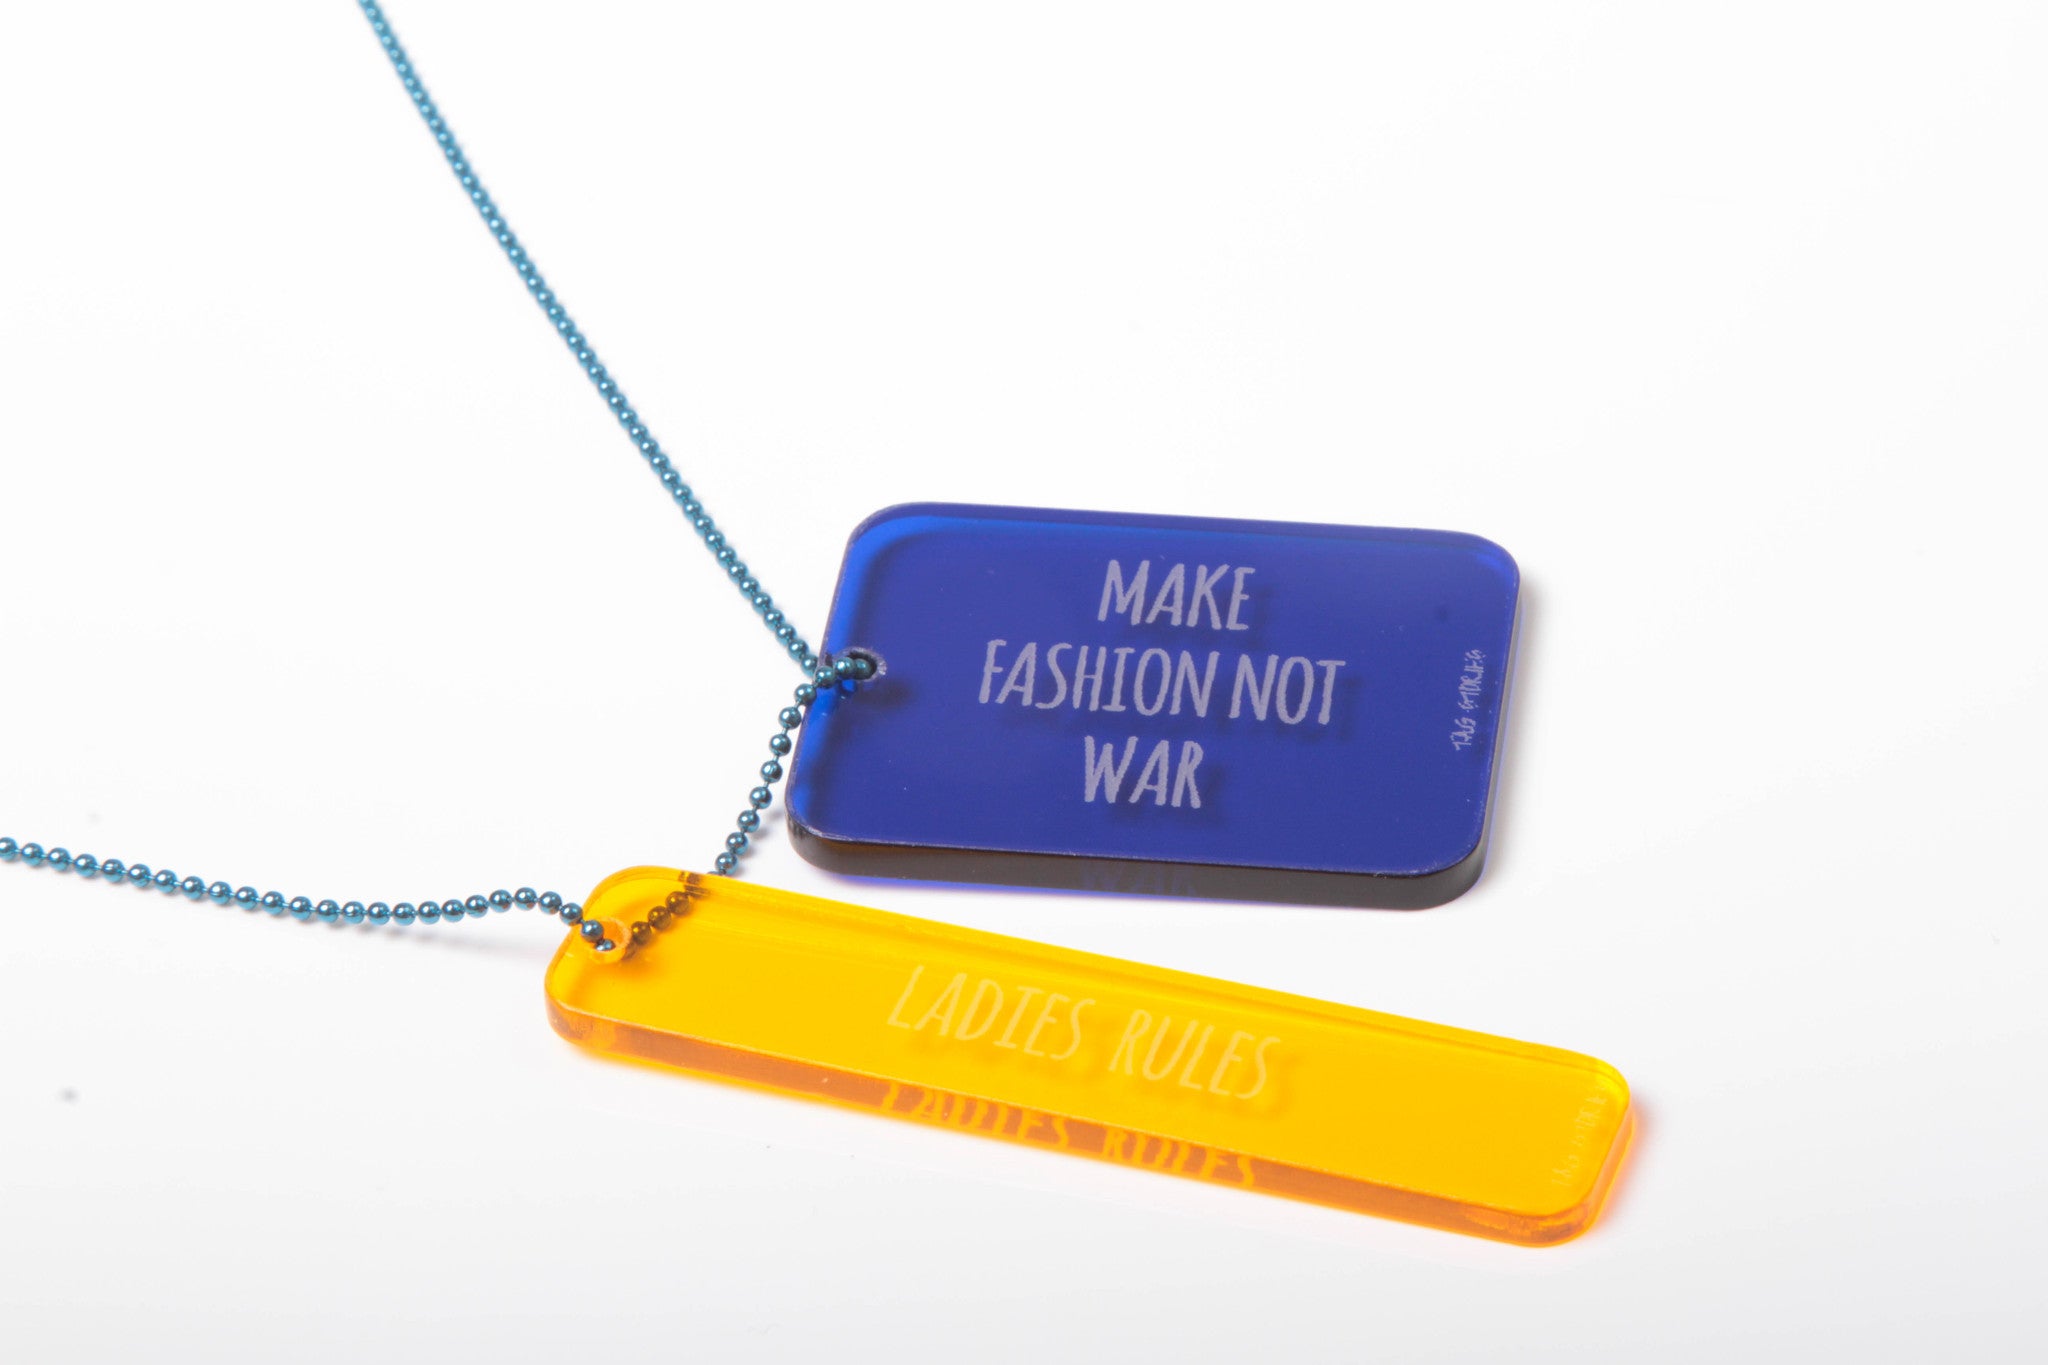 make fashion not war / ladies rules